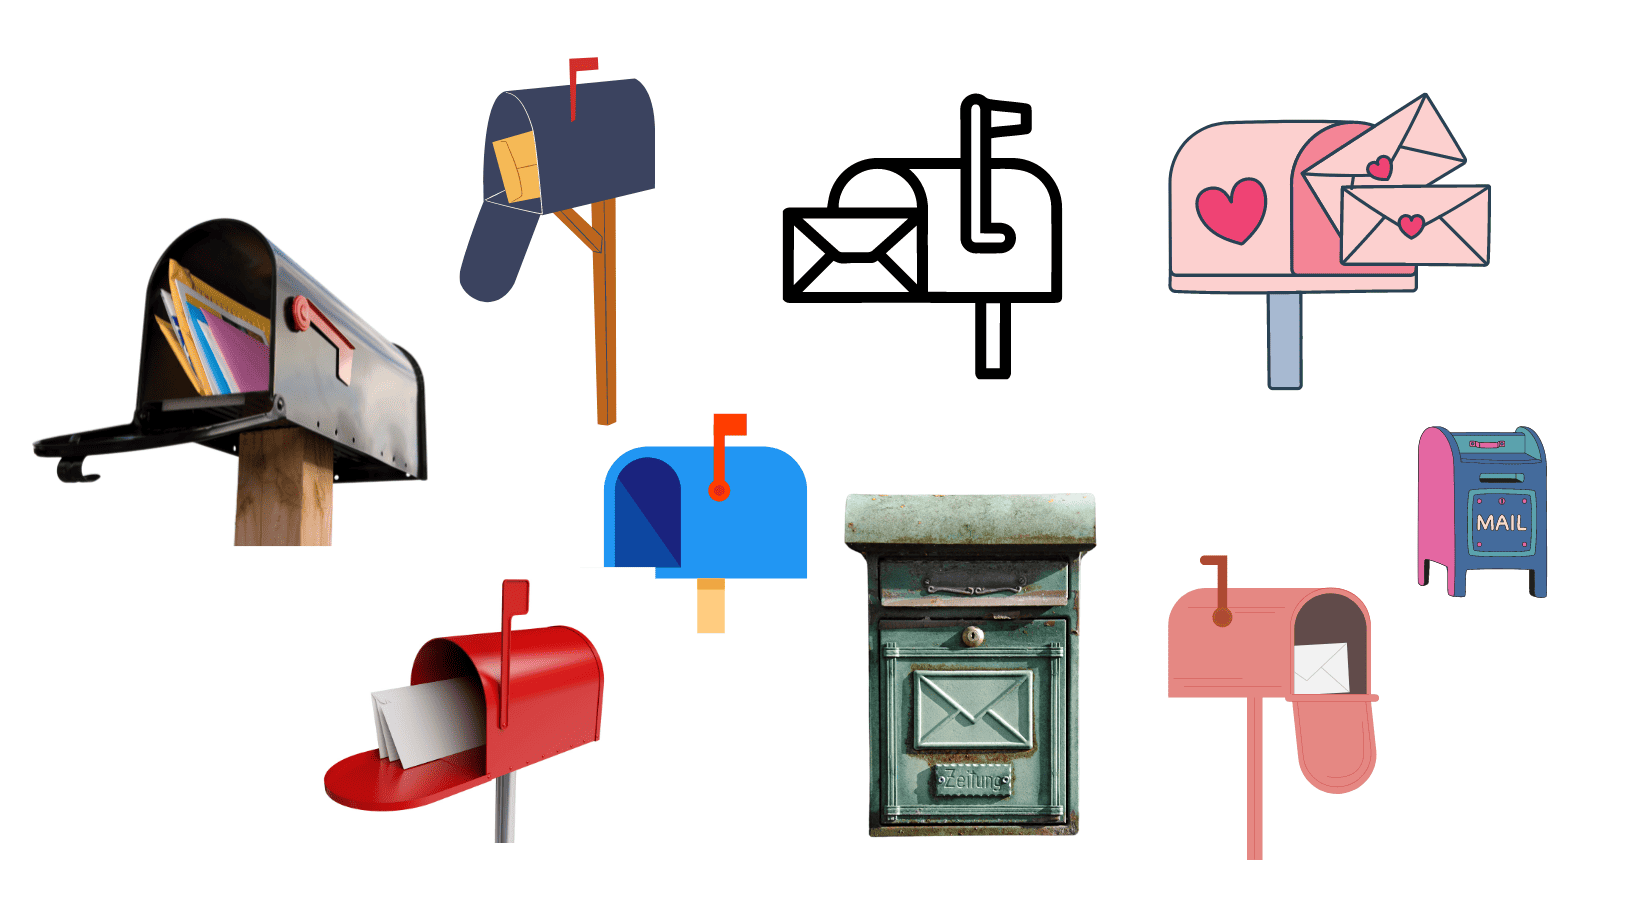 מקבץ של איורים של תיבות דואר מסוגים שונים